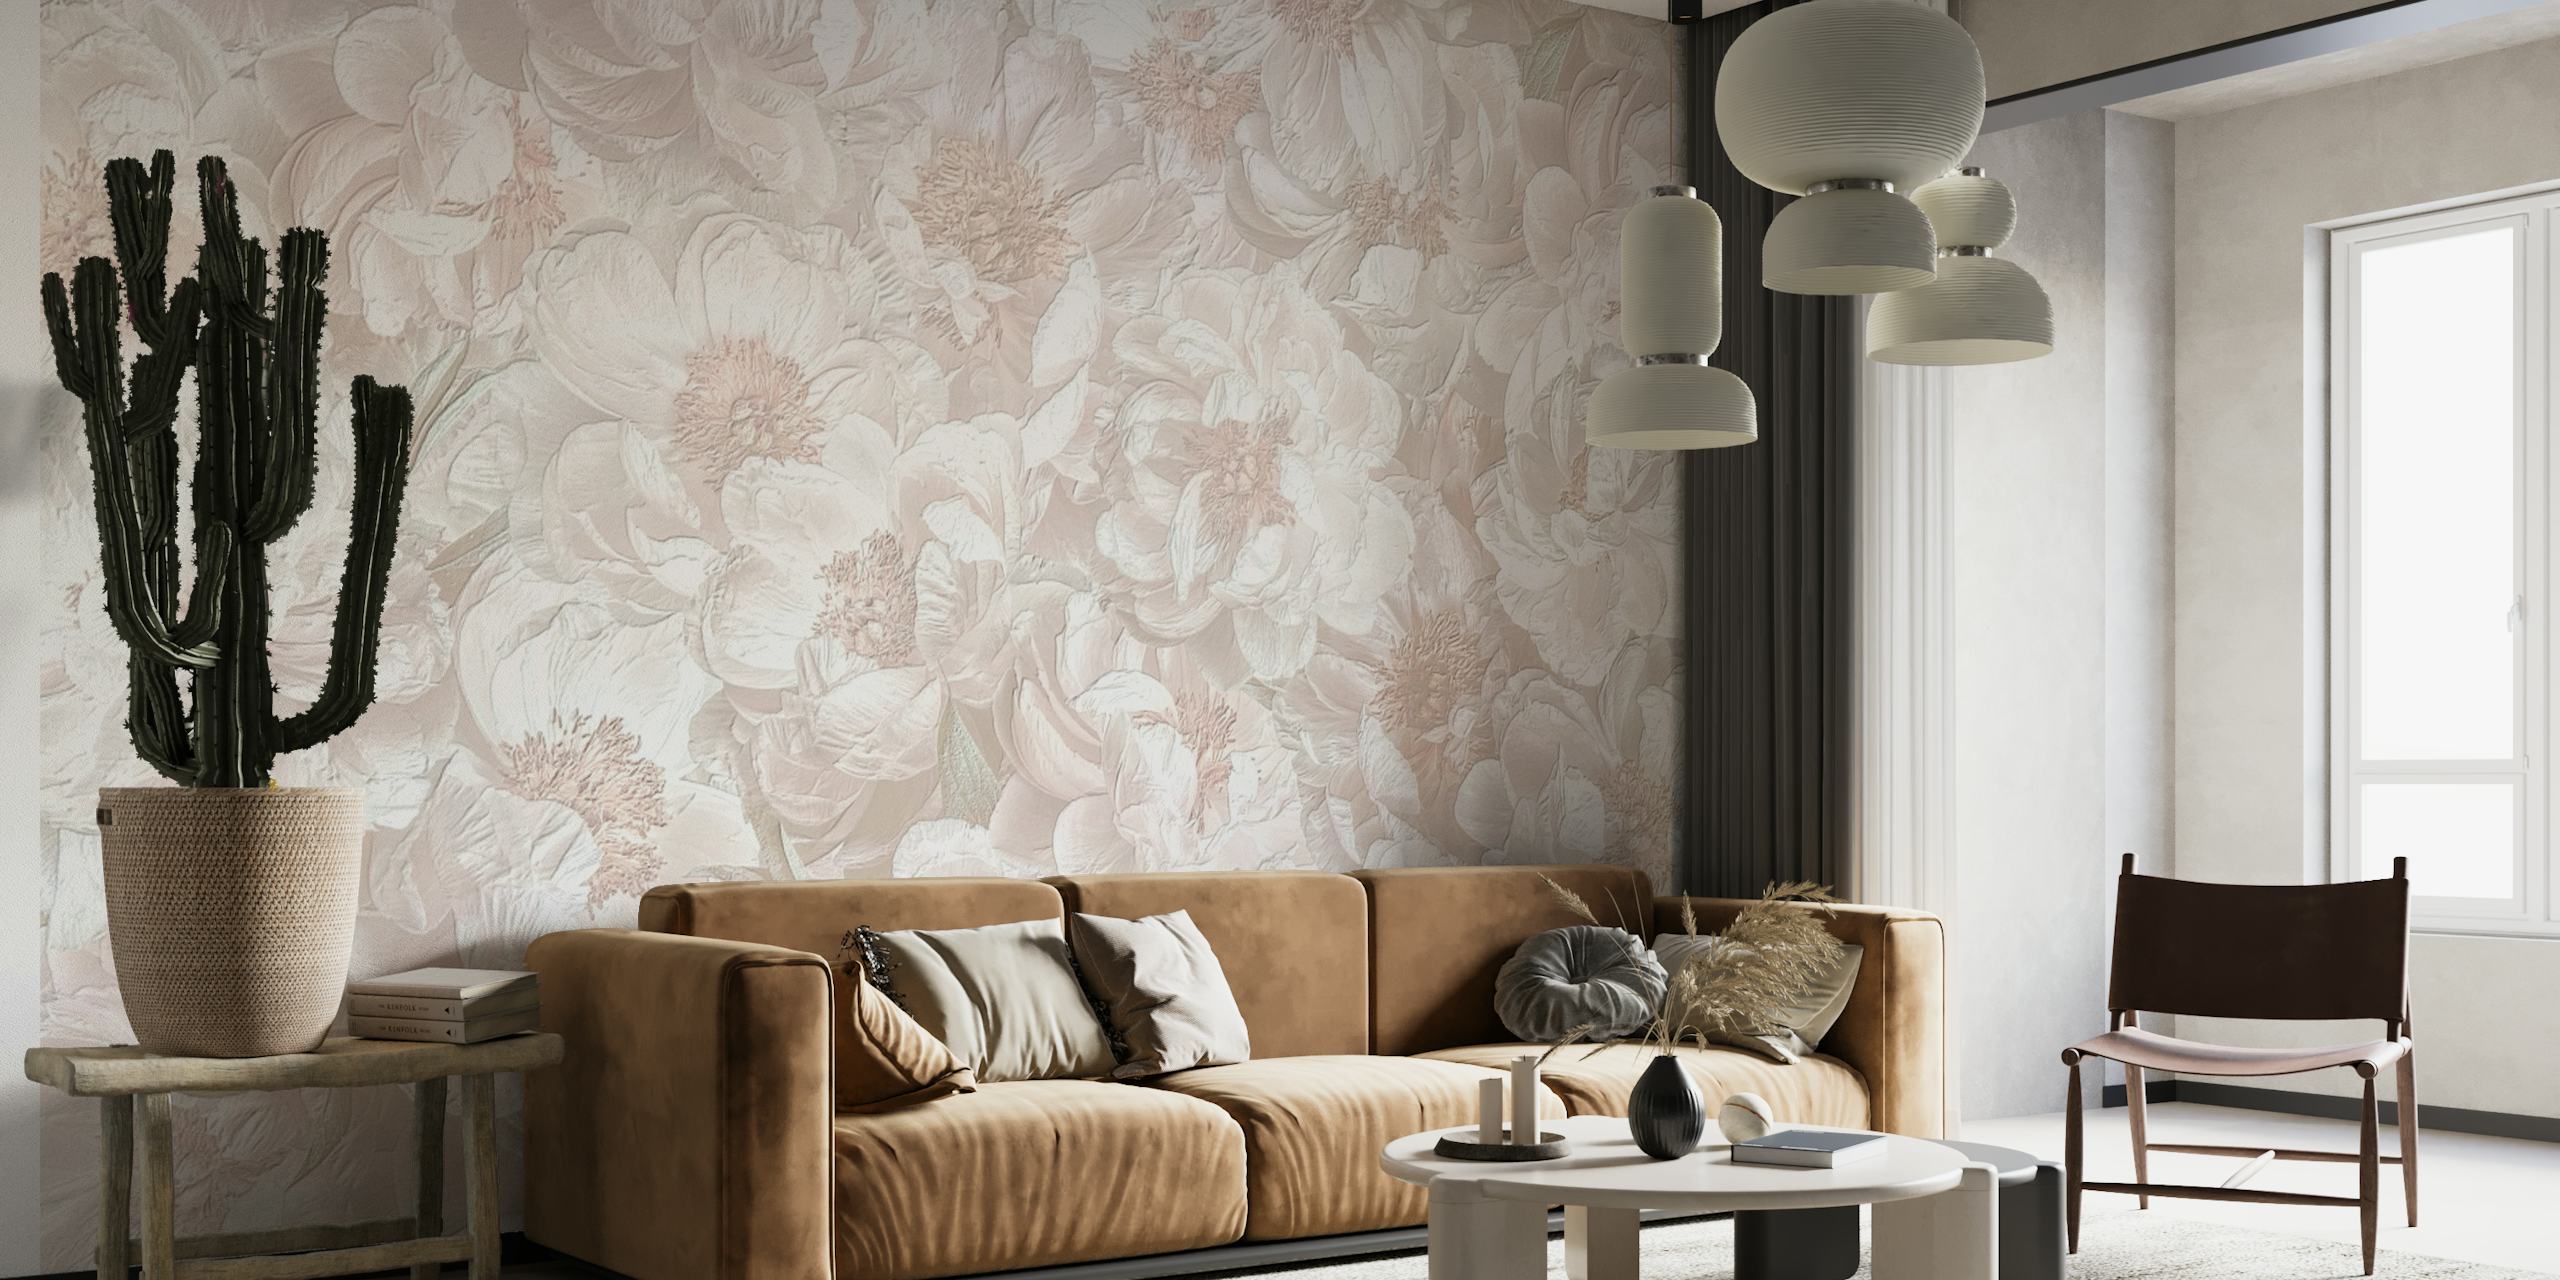 Elegante decorazione murale con fiori bianchi per un arredamento rilassante della casa